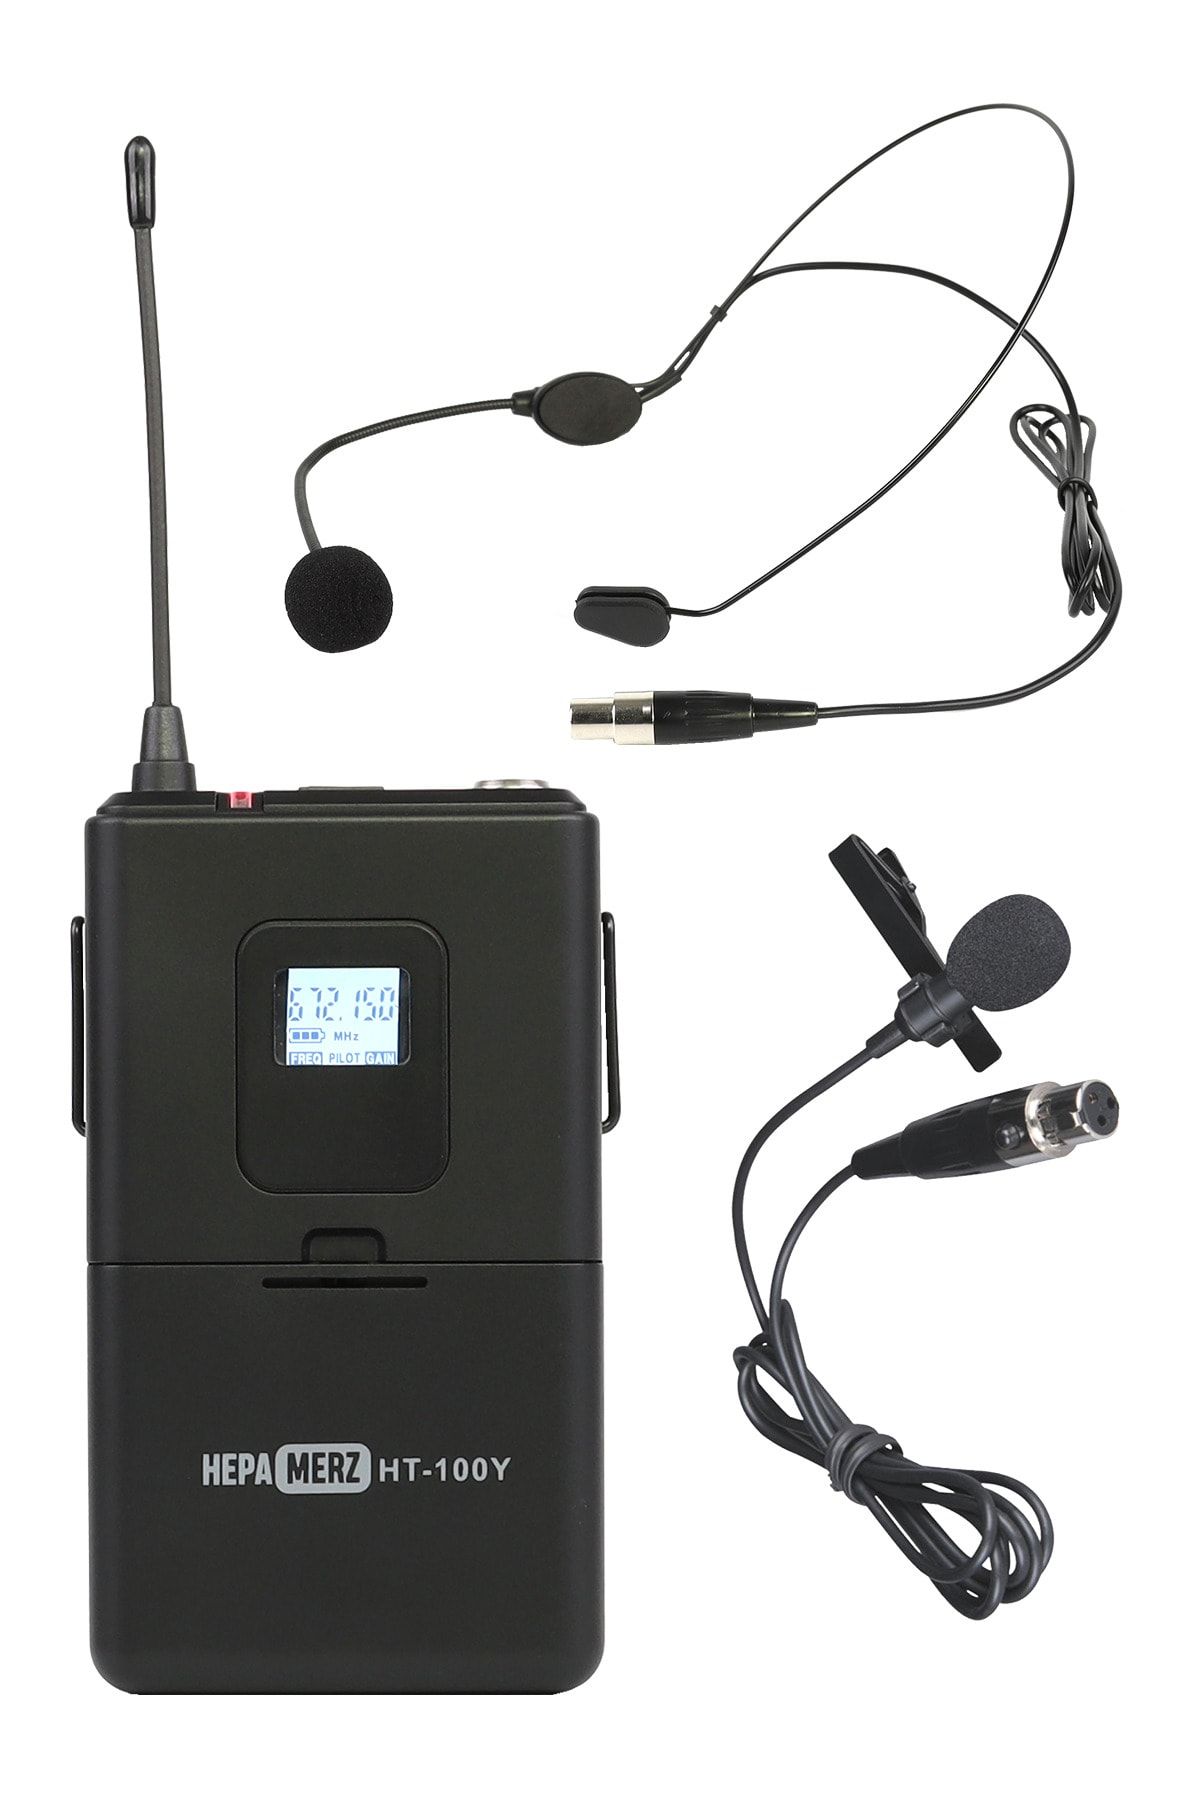 Hepa-Merz Hepa Merz Ht-100y Verici Kablosuz Yaka Mikrofonu Headset ( Hm-444 Ve Hm-888 Alıcı Ile Çalışabilir )